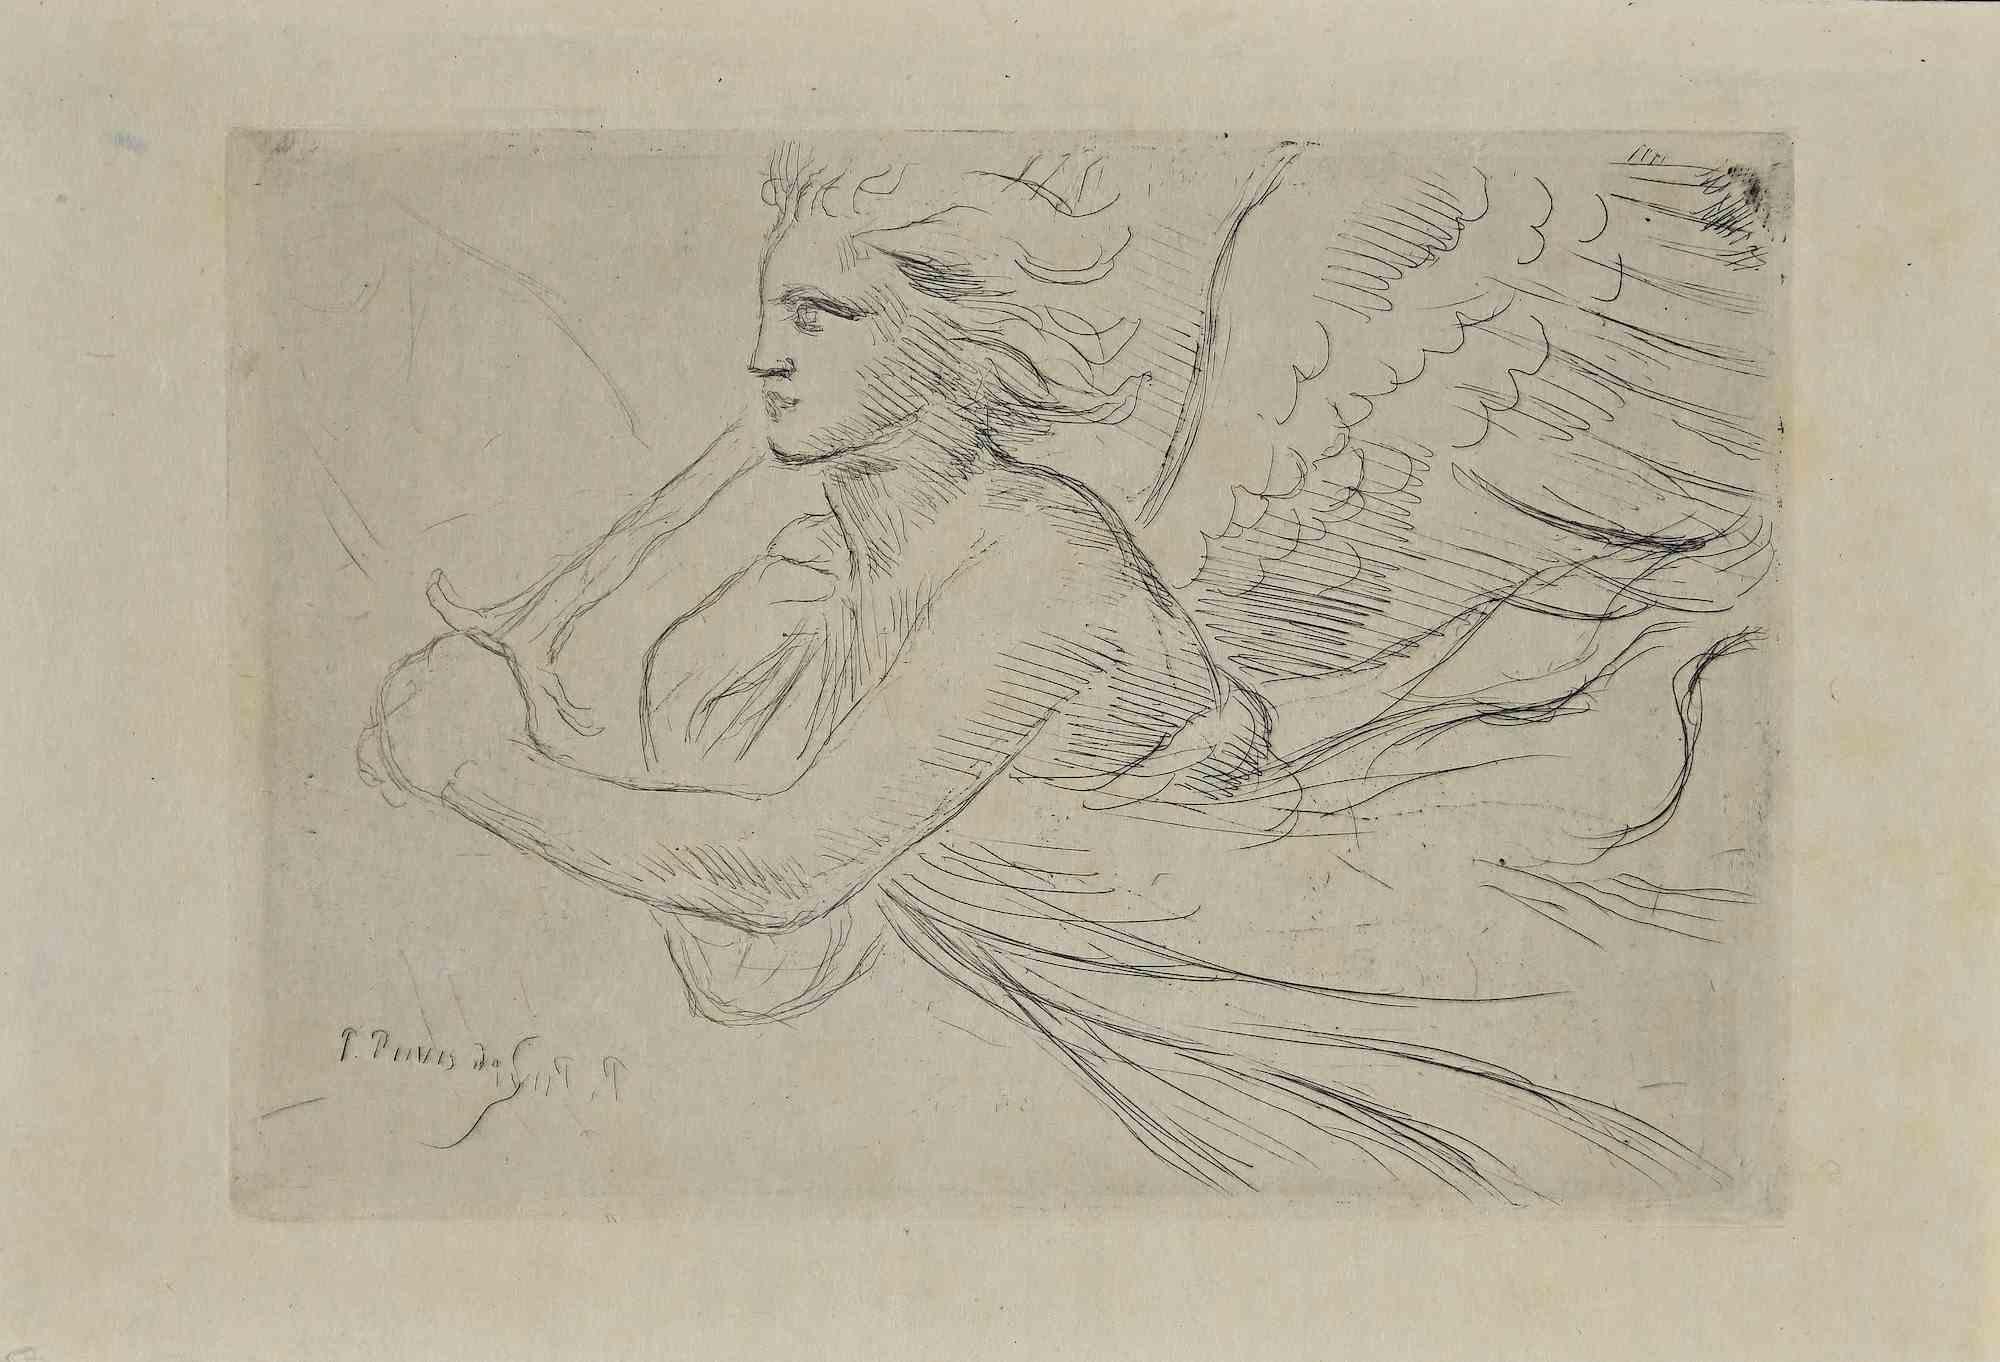 Pierre Puvis de Chavannes Figurative Print - Angel - Original Etching by P. Puvis de Chavannes - Late 19th Century